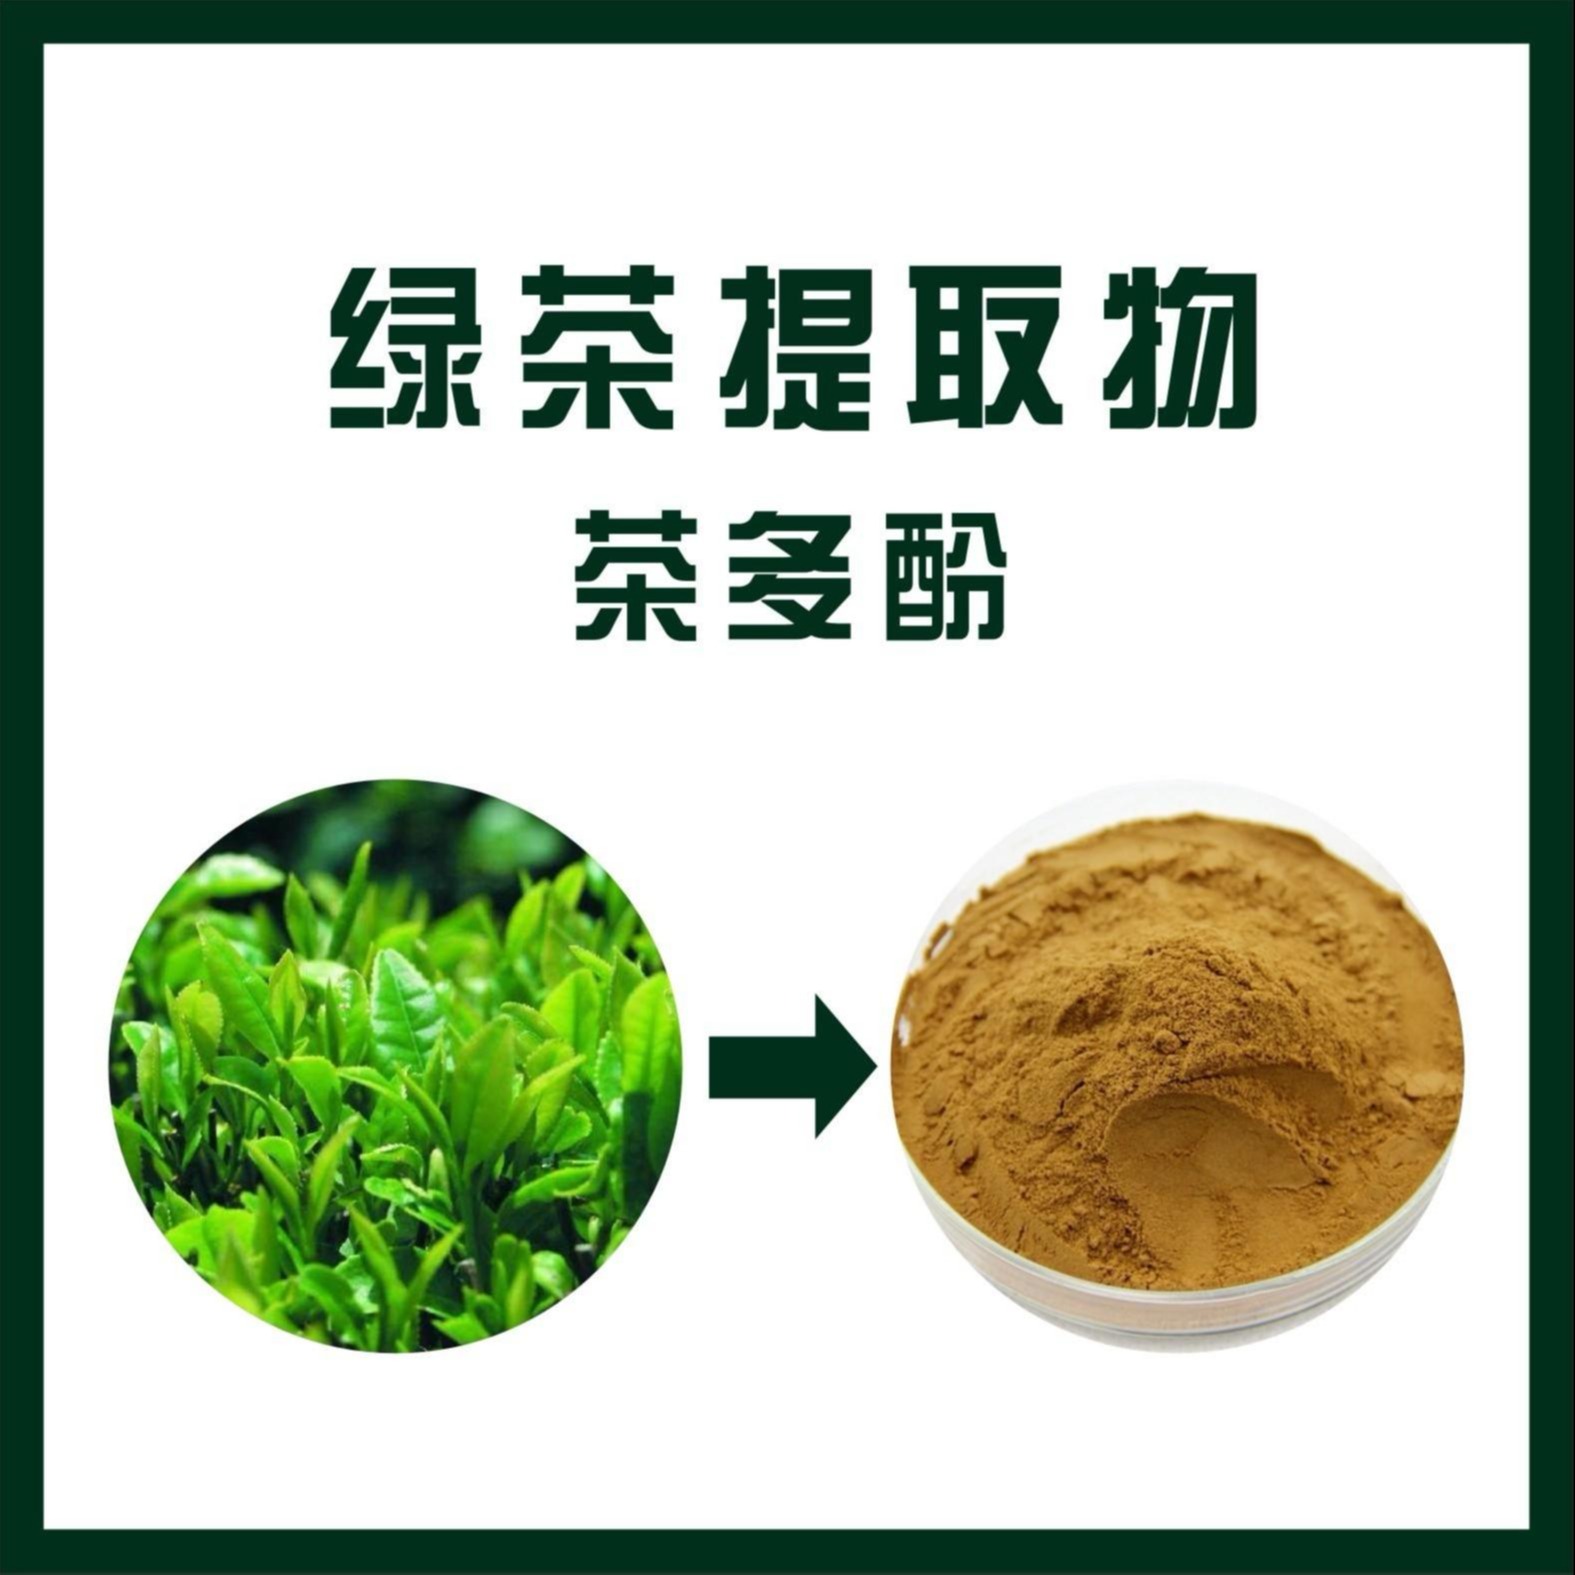 茶多酚 绿茶提取物 食品保健品原料 厂家供应